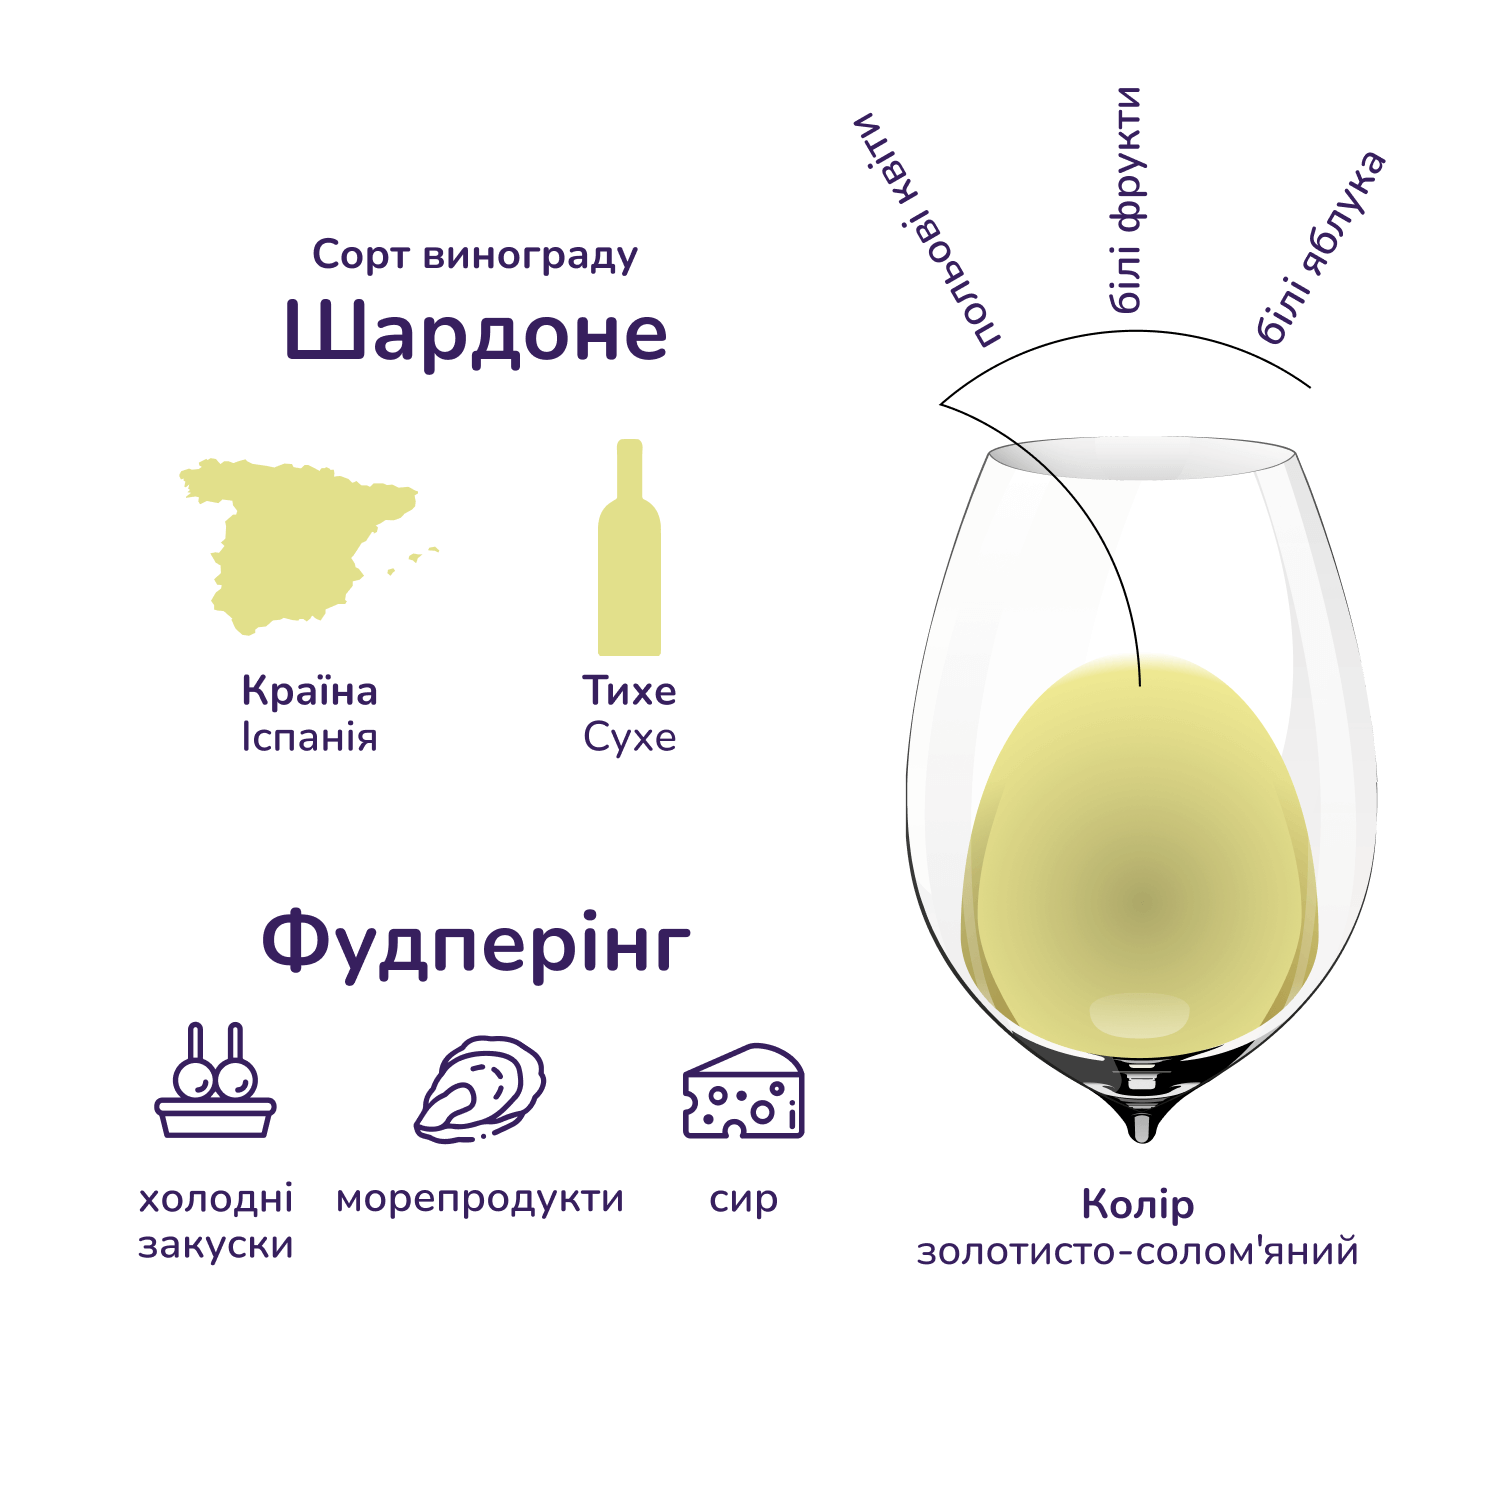 Вино Don Simon Chardonnay, белое, сухое, 12%, 0,75 л - фото 2